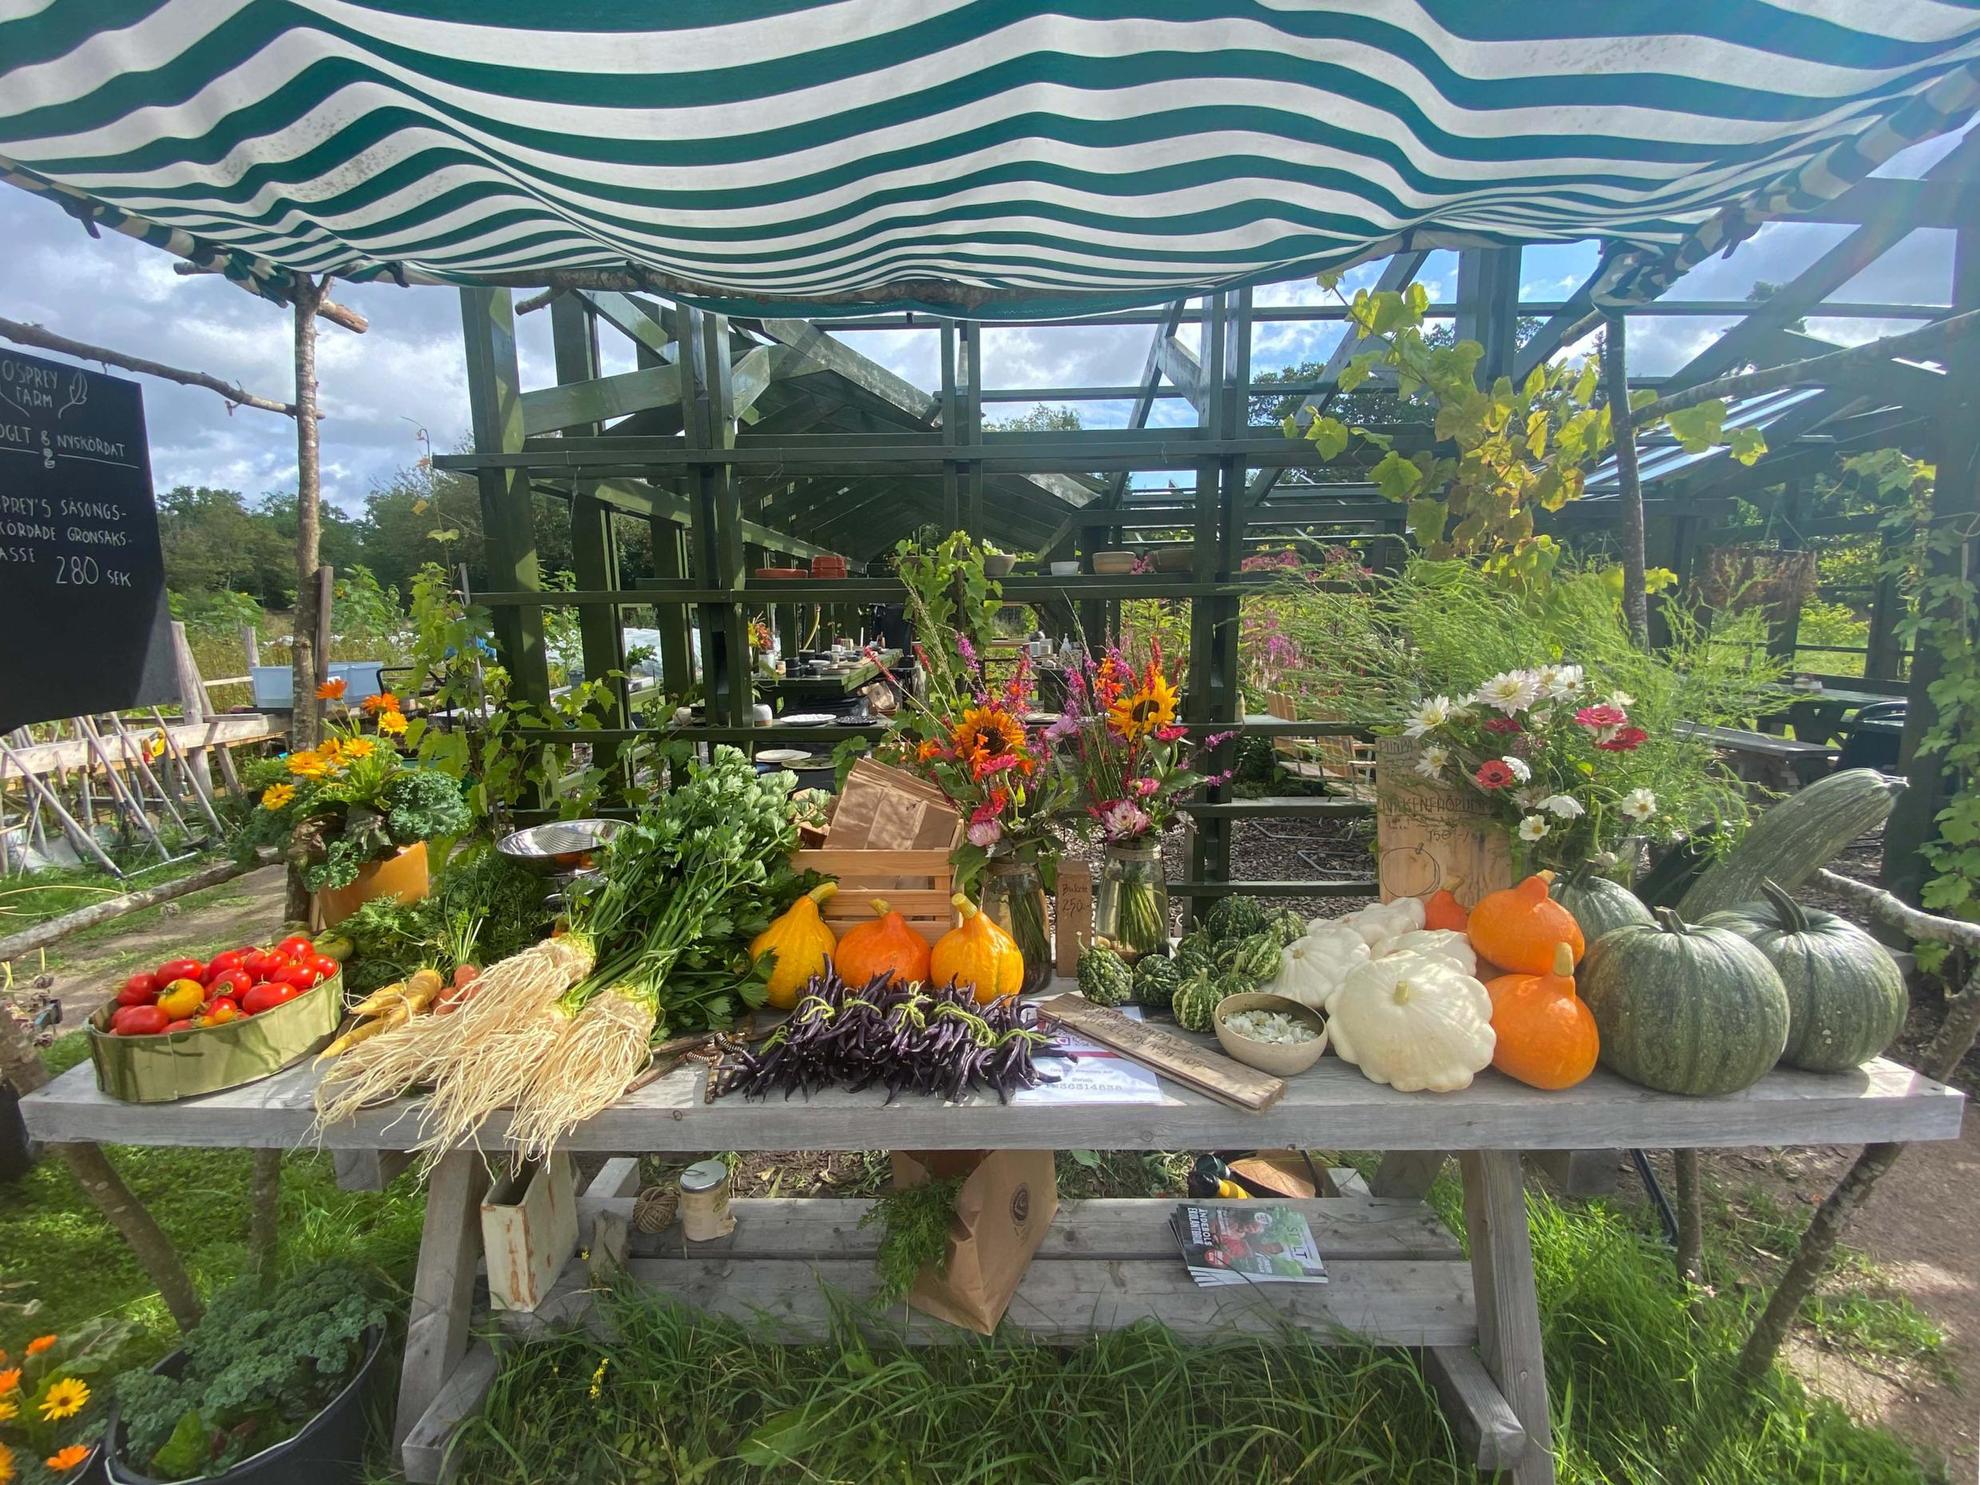 Ein Tisch ist mit verschiedenen Gemüsesorten wie Kürbisse, Tomaten und Petersilie gefüllt.